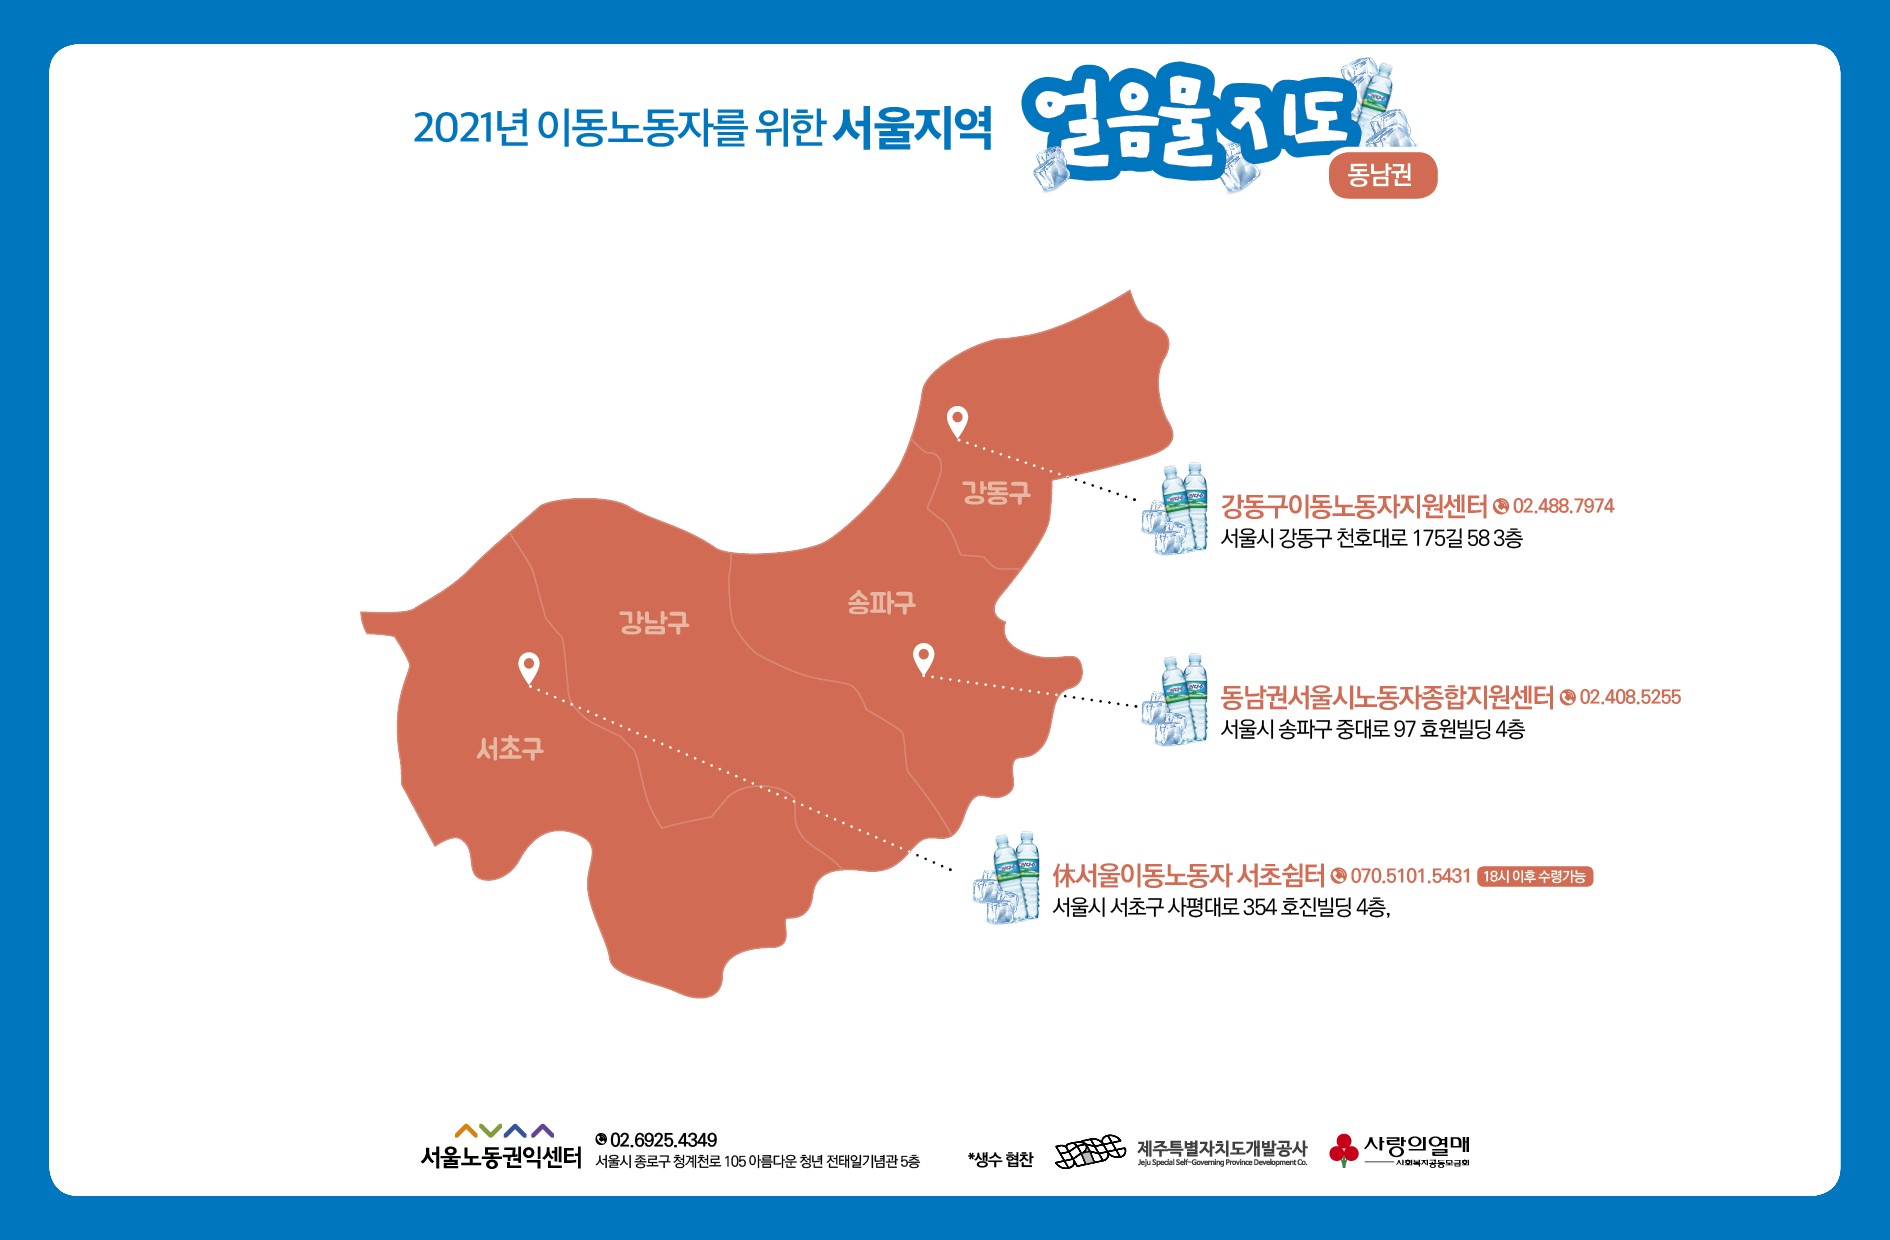 2021_얼음물지도_동남권.jpg 관련 이미지